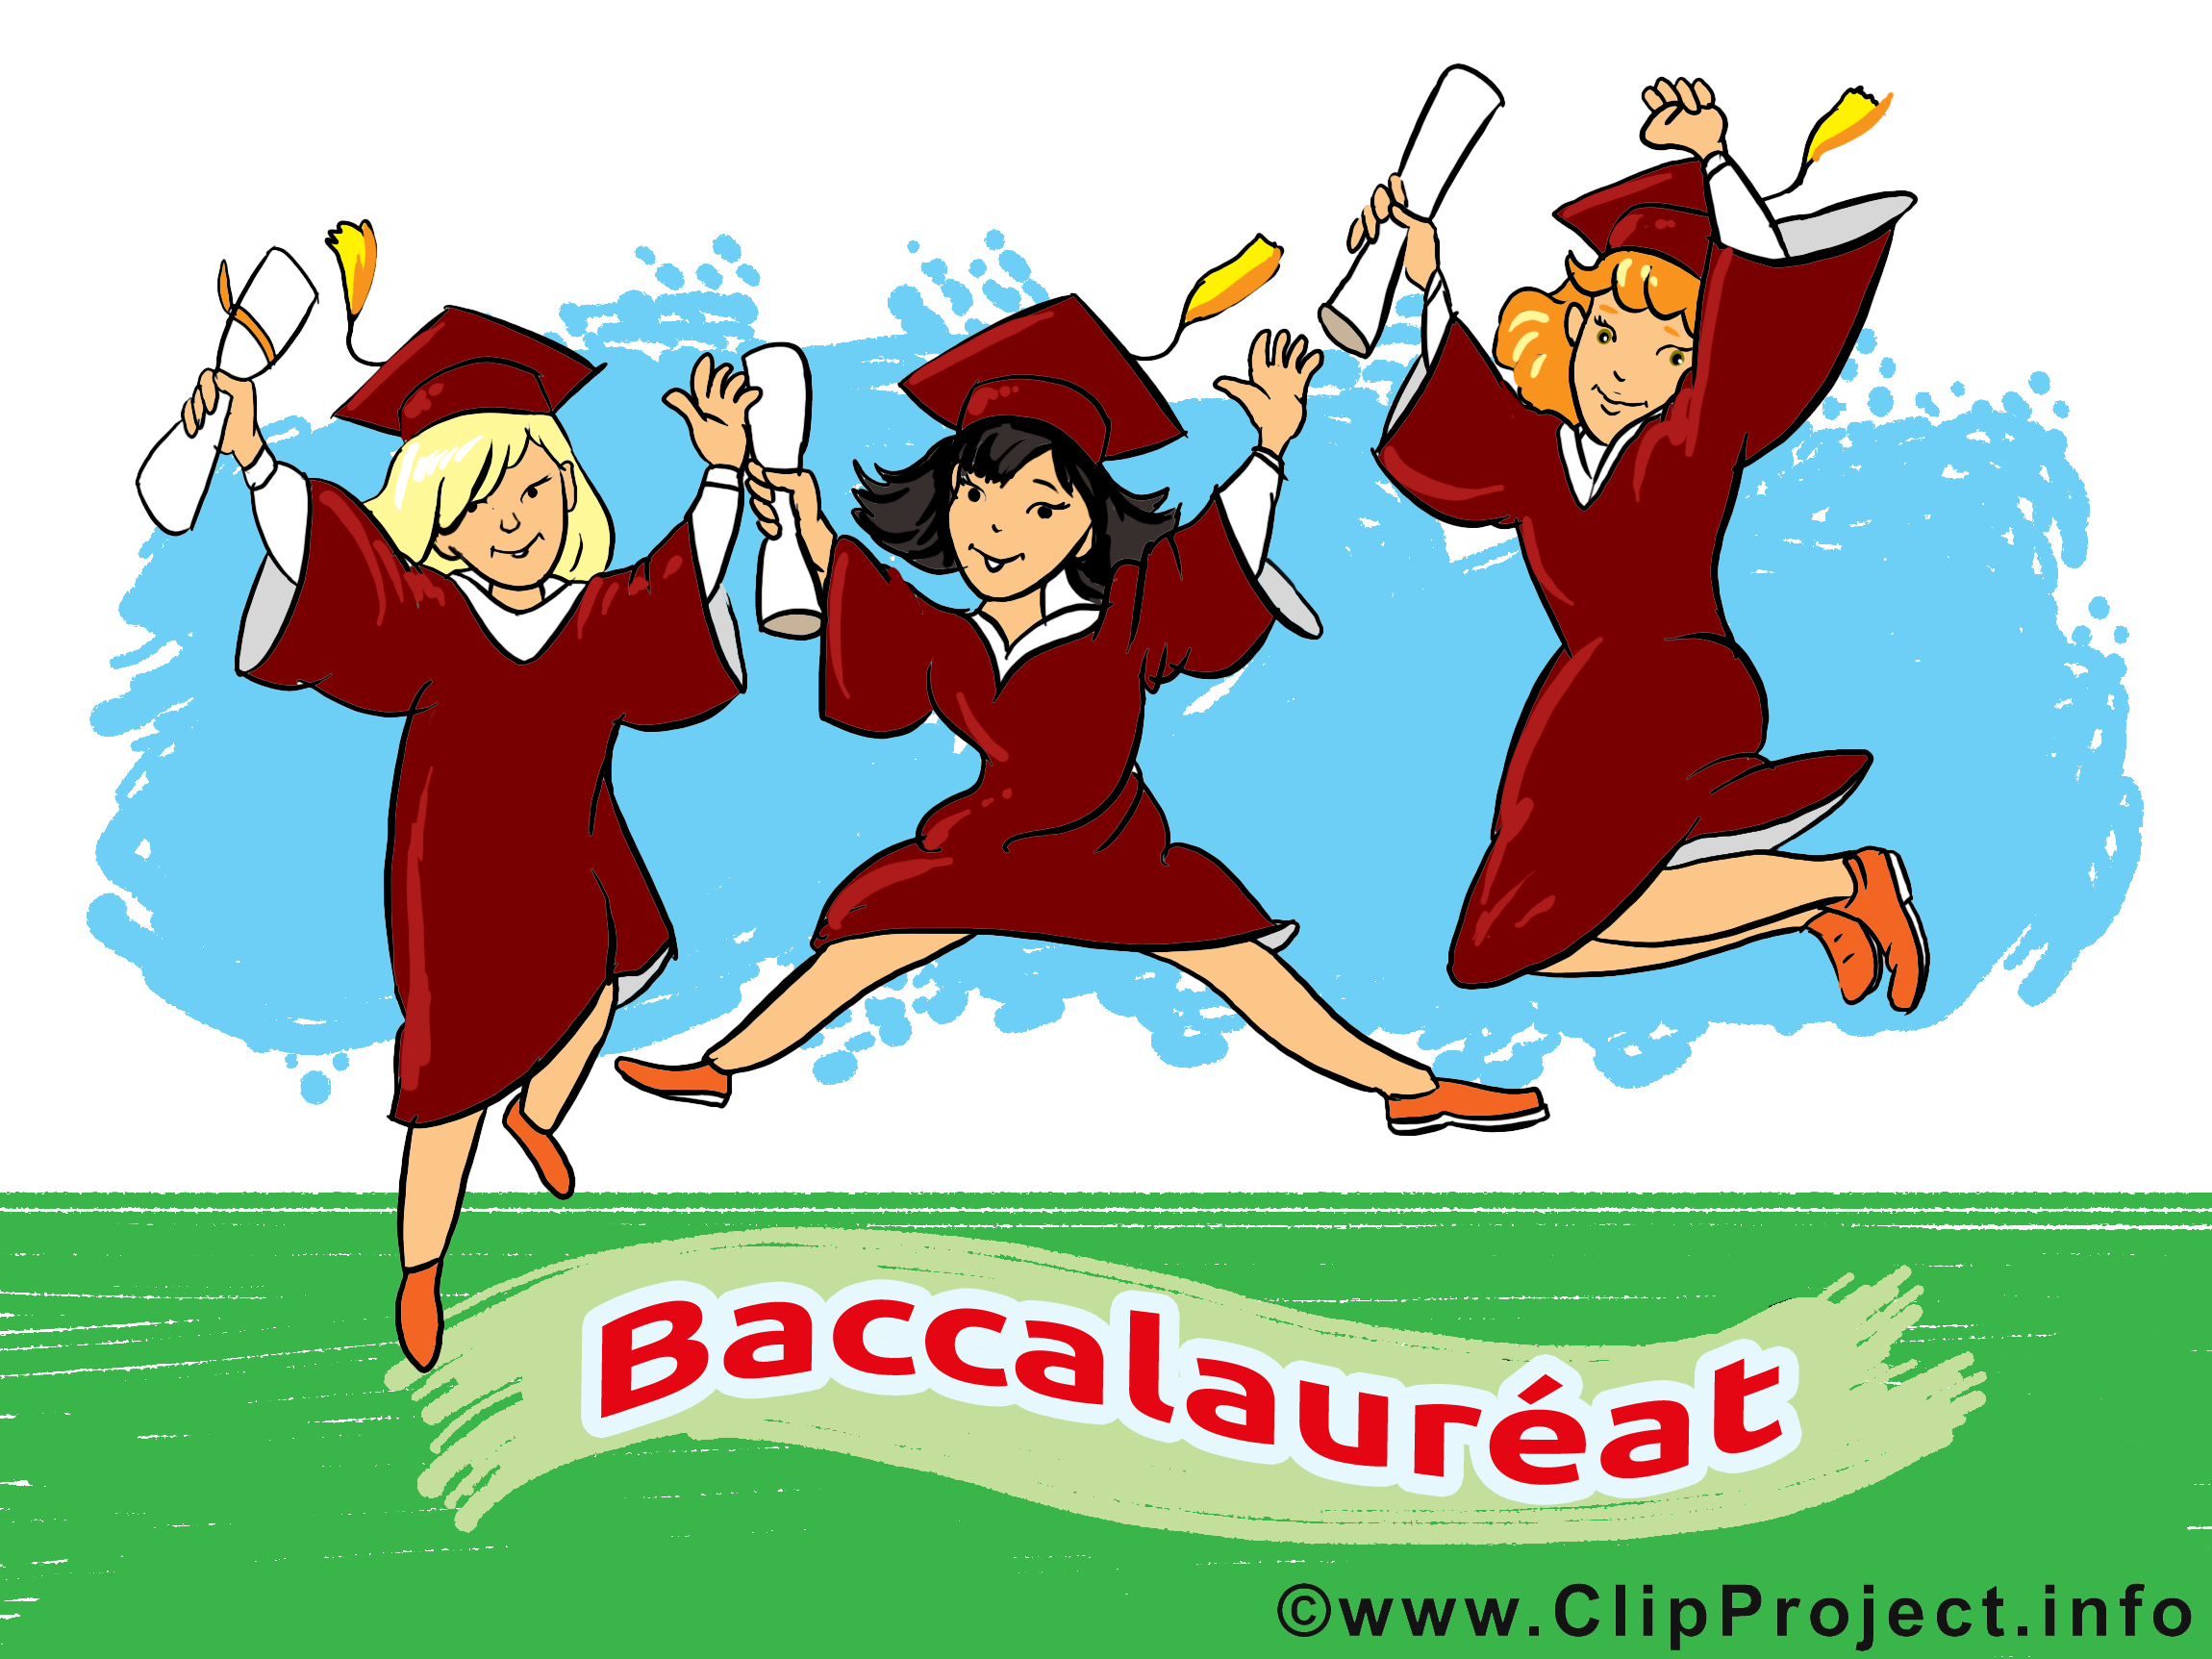 Clipart gratuit baccalauréat images